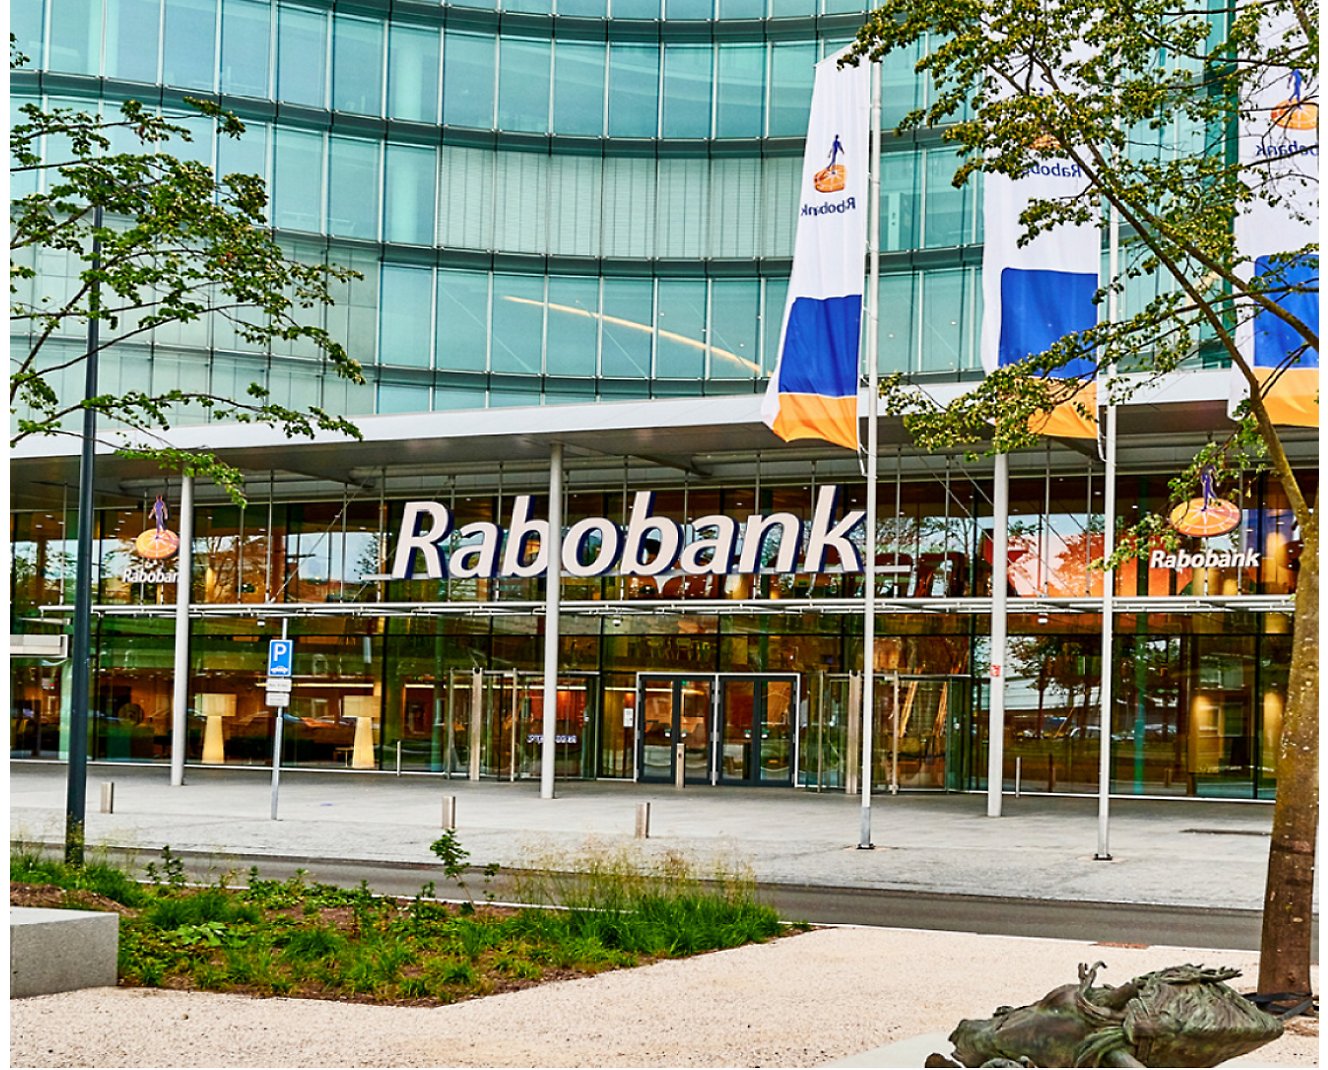 Egy épület egy Rabobank feliratú táblával.